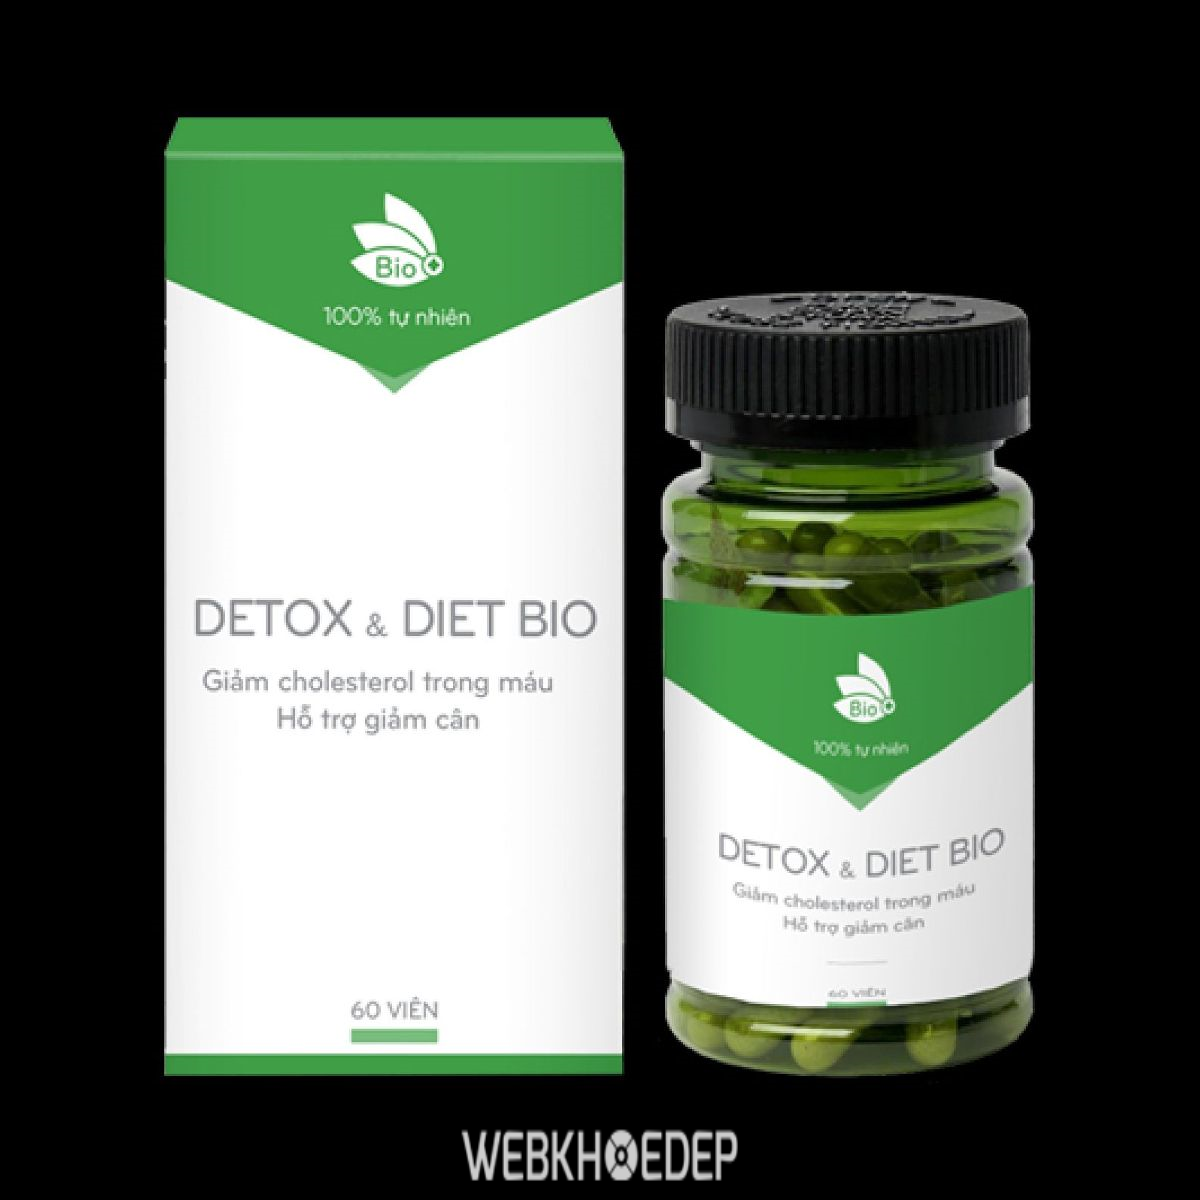 Detox Diet Bio được chiết xuất từ các thành phần tự nhiên